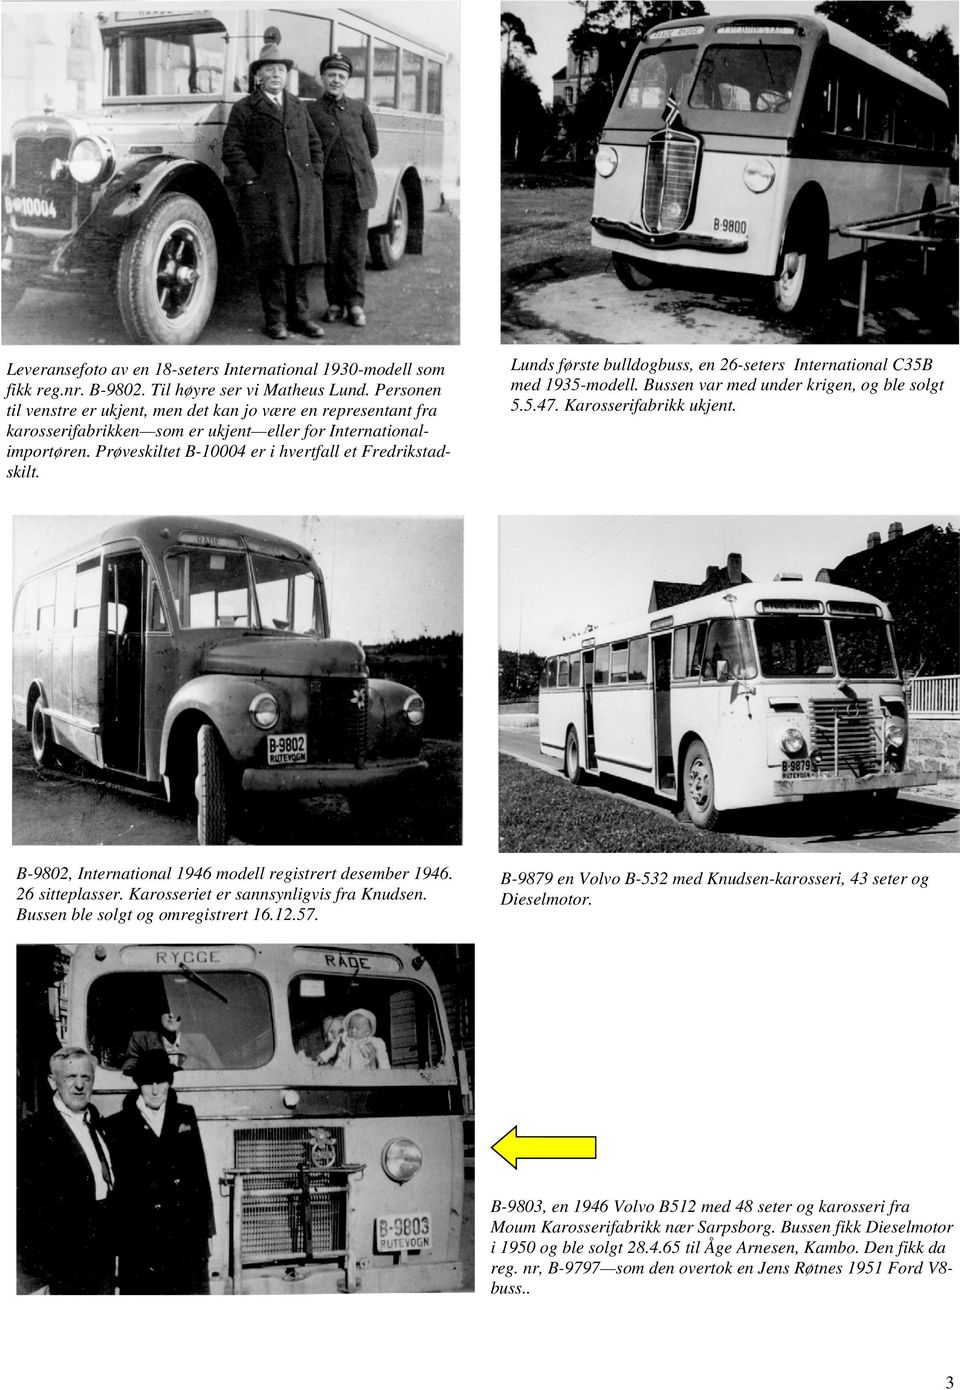 B-9802, International 1946 modell registrert desember 1946. 26 sitteplasser. Karosseriet er sannsynligvis fra Knudsen. Bussen ble solgt og omregistrert 16.12.57.